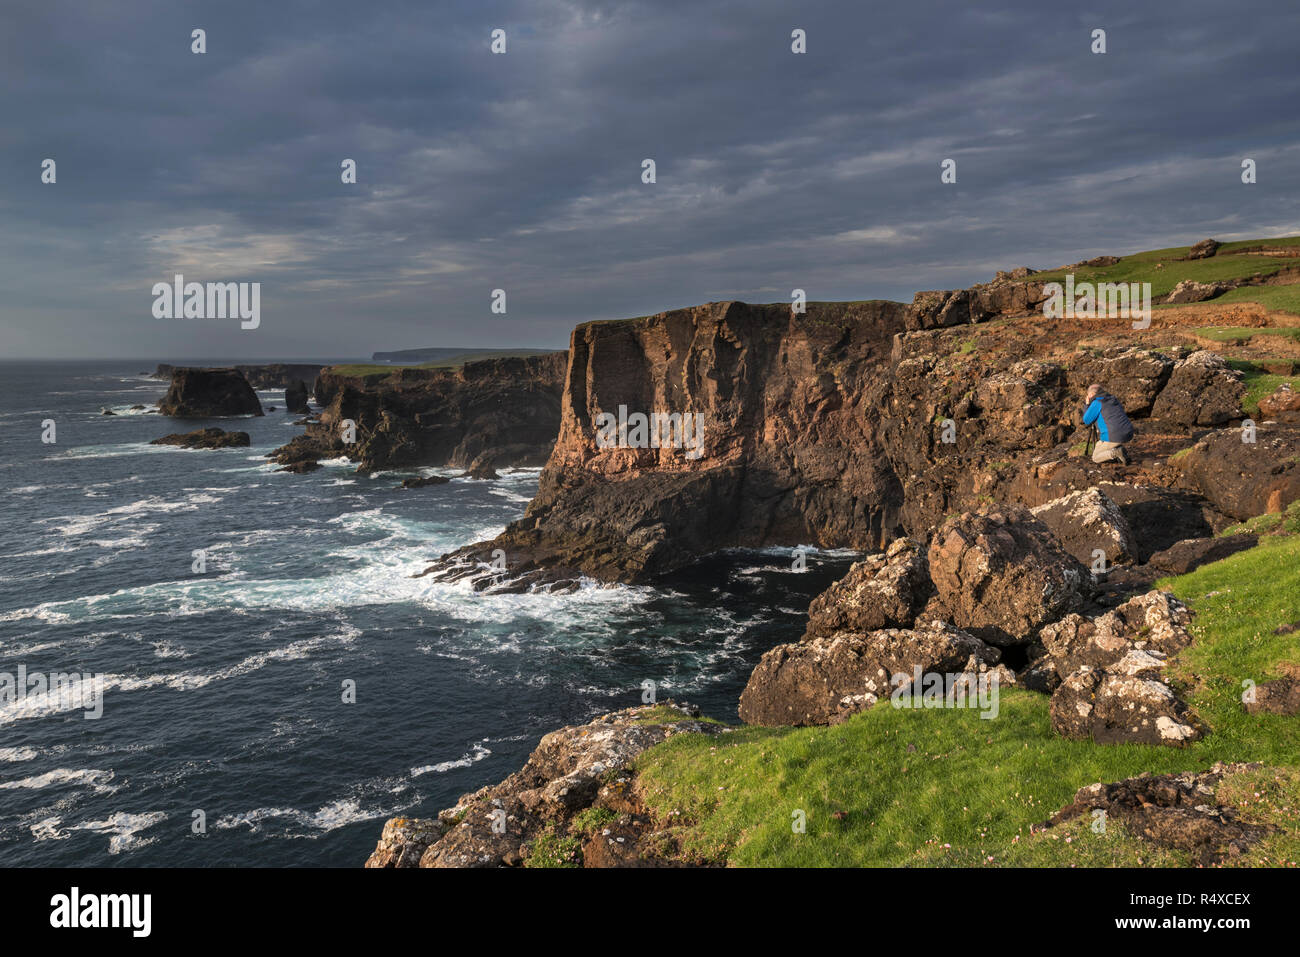 Fotografo di paesaggio a scattare foto di scogliere sul mare a Eshaness / Esha Ness durante la tempesta in avvicinamento in Northmavine, Continentale, Shetland, Scotland, Regno Unito Foto Stock